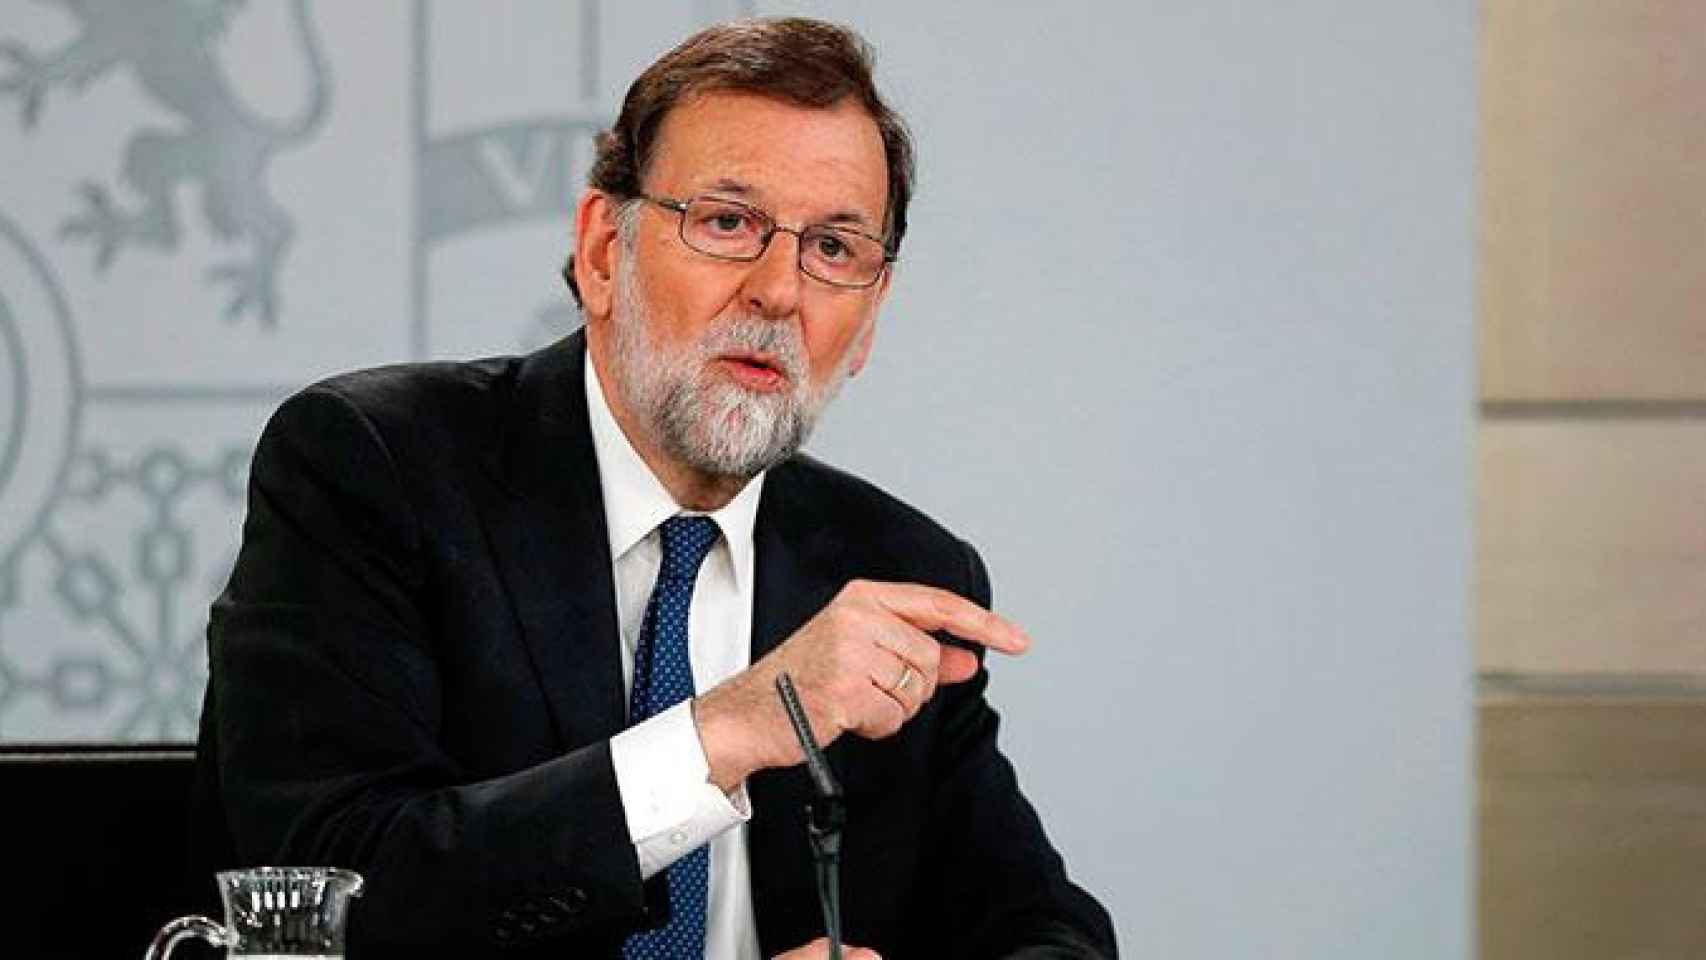 El presidente del Gobierno, Mariano Rajoy, comparece ante los medios tras el registro de la moción de censura del PSOE / EFE